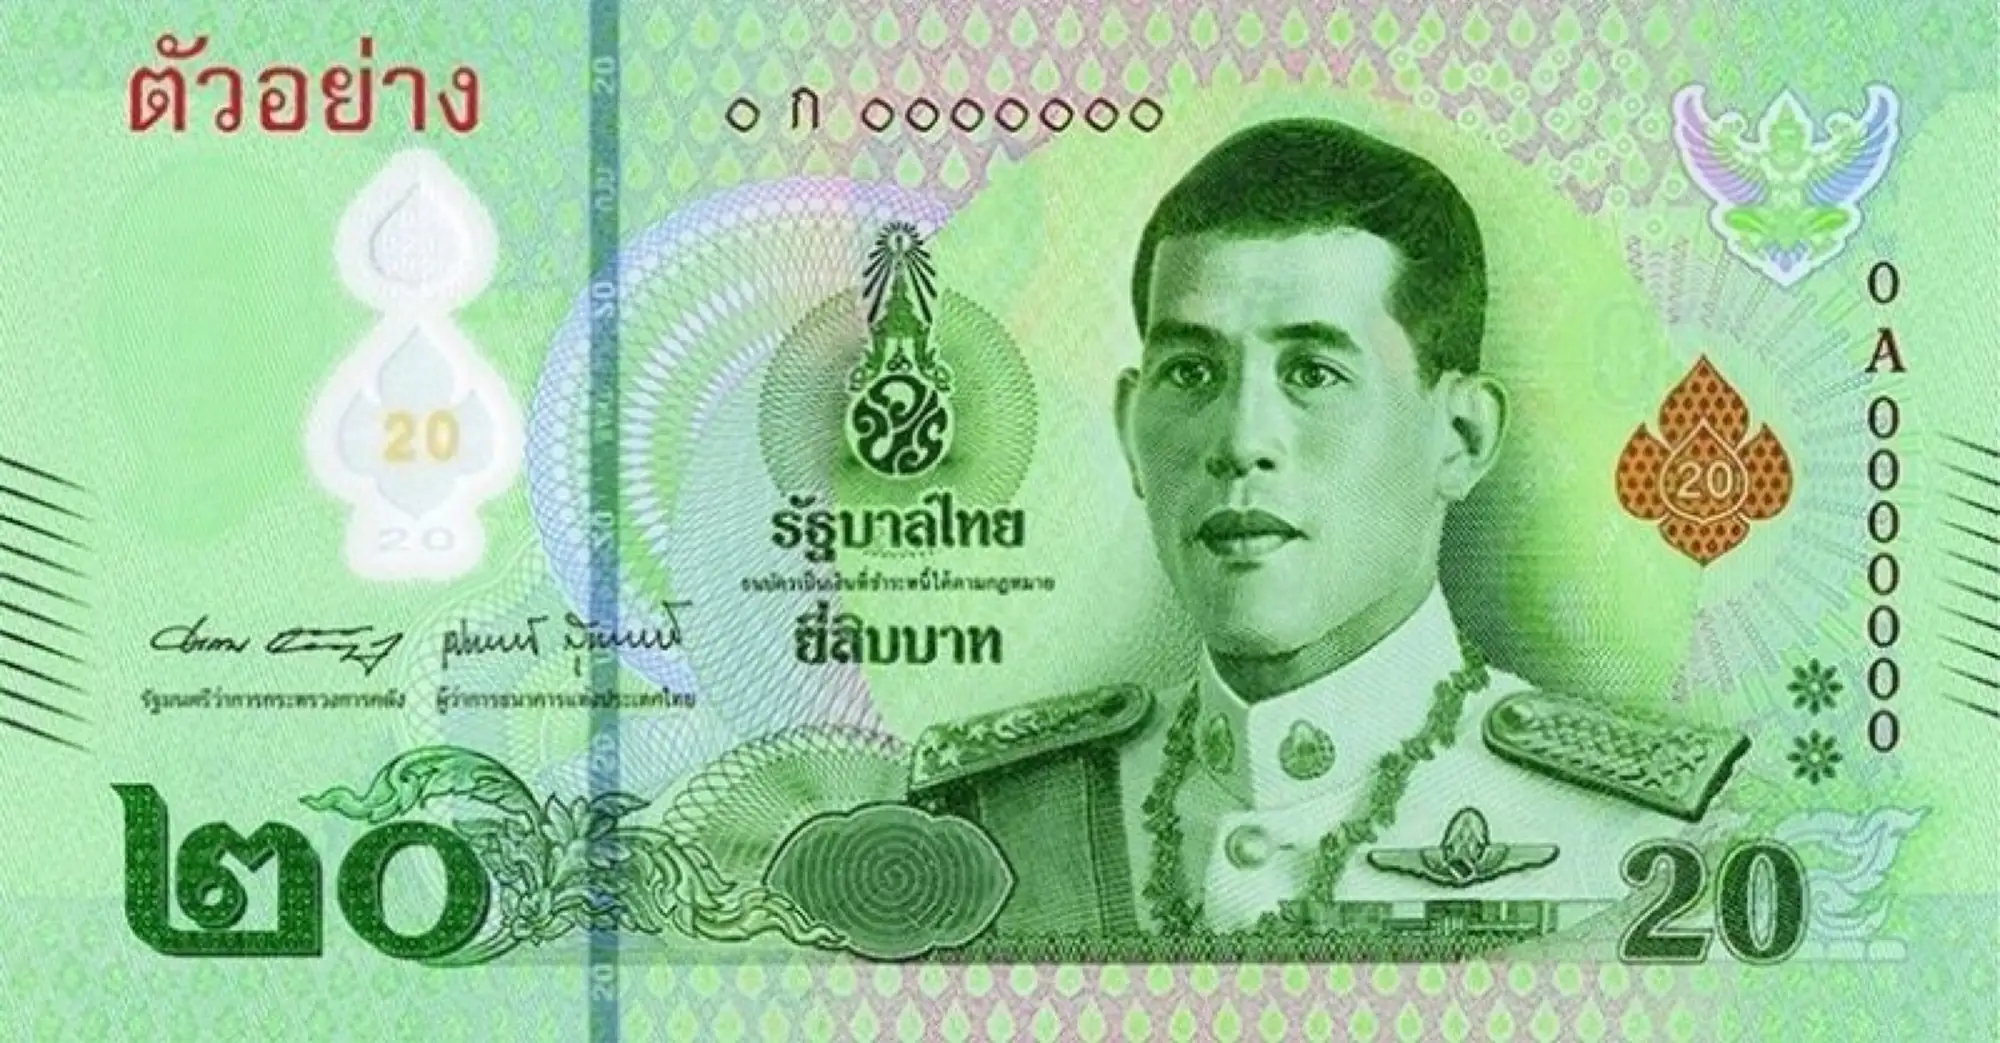 塑胶做的！新版20泰铢钞票亮相 预计3月开放兑换 Vision Thai 看见泰国